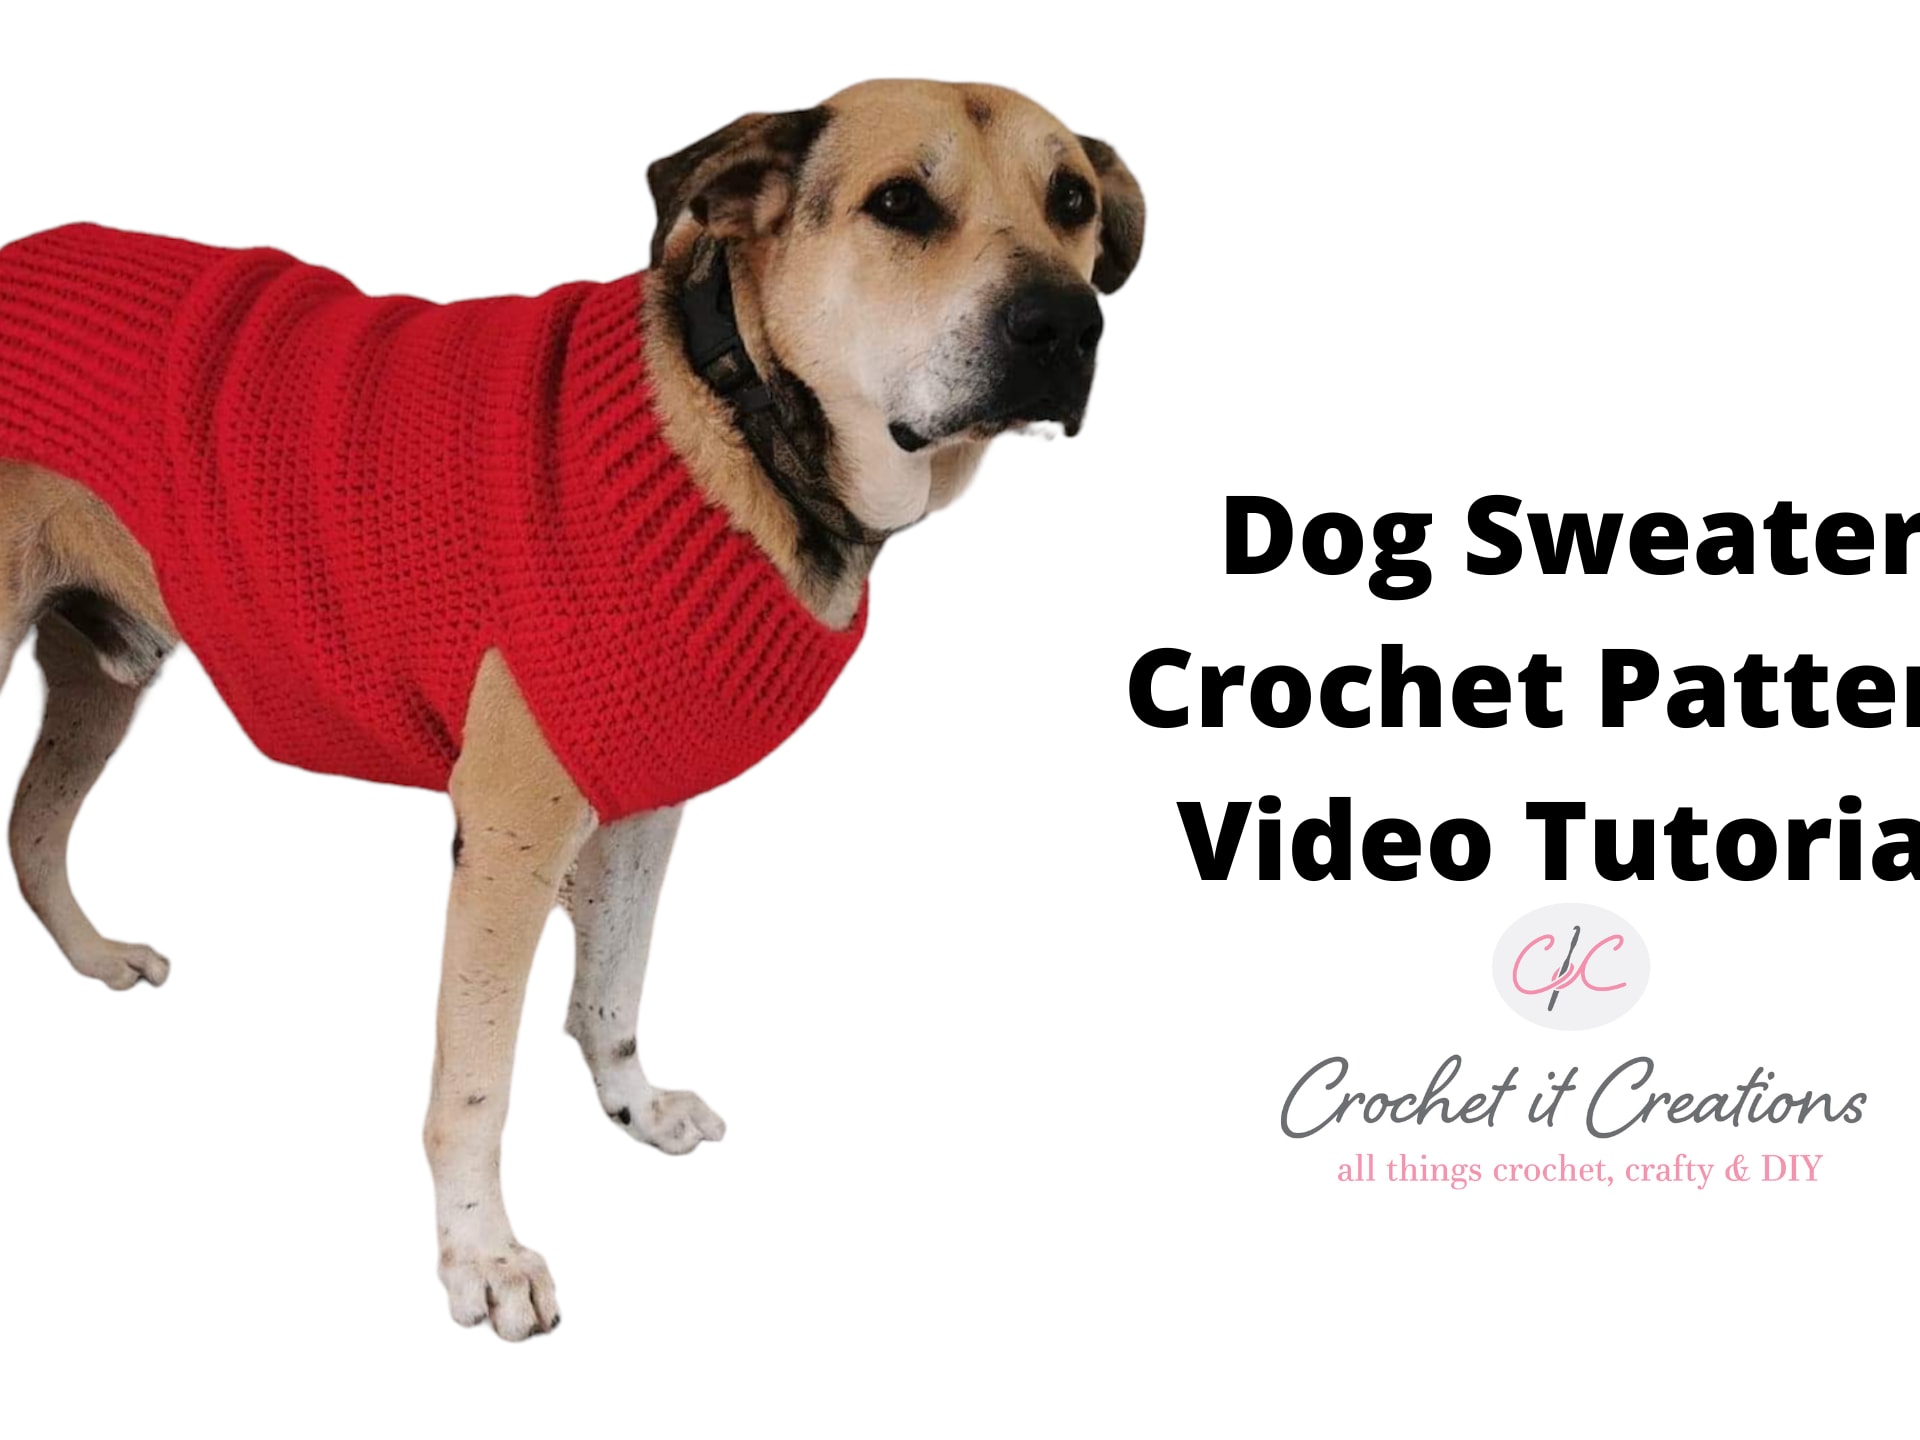 10 Dog Sweater Crochet Patterns - TimmelCrochet